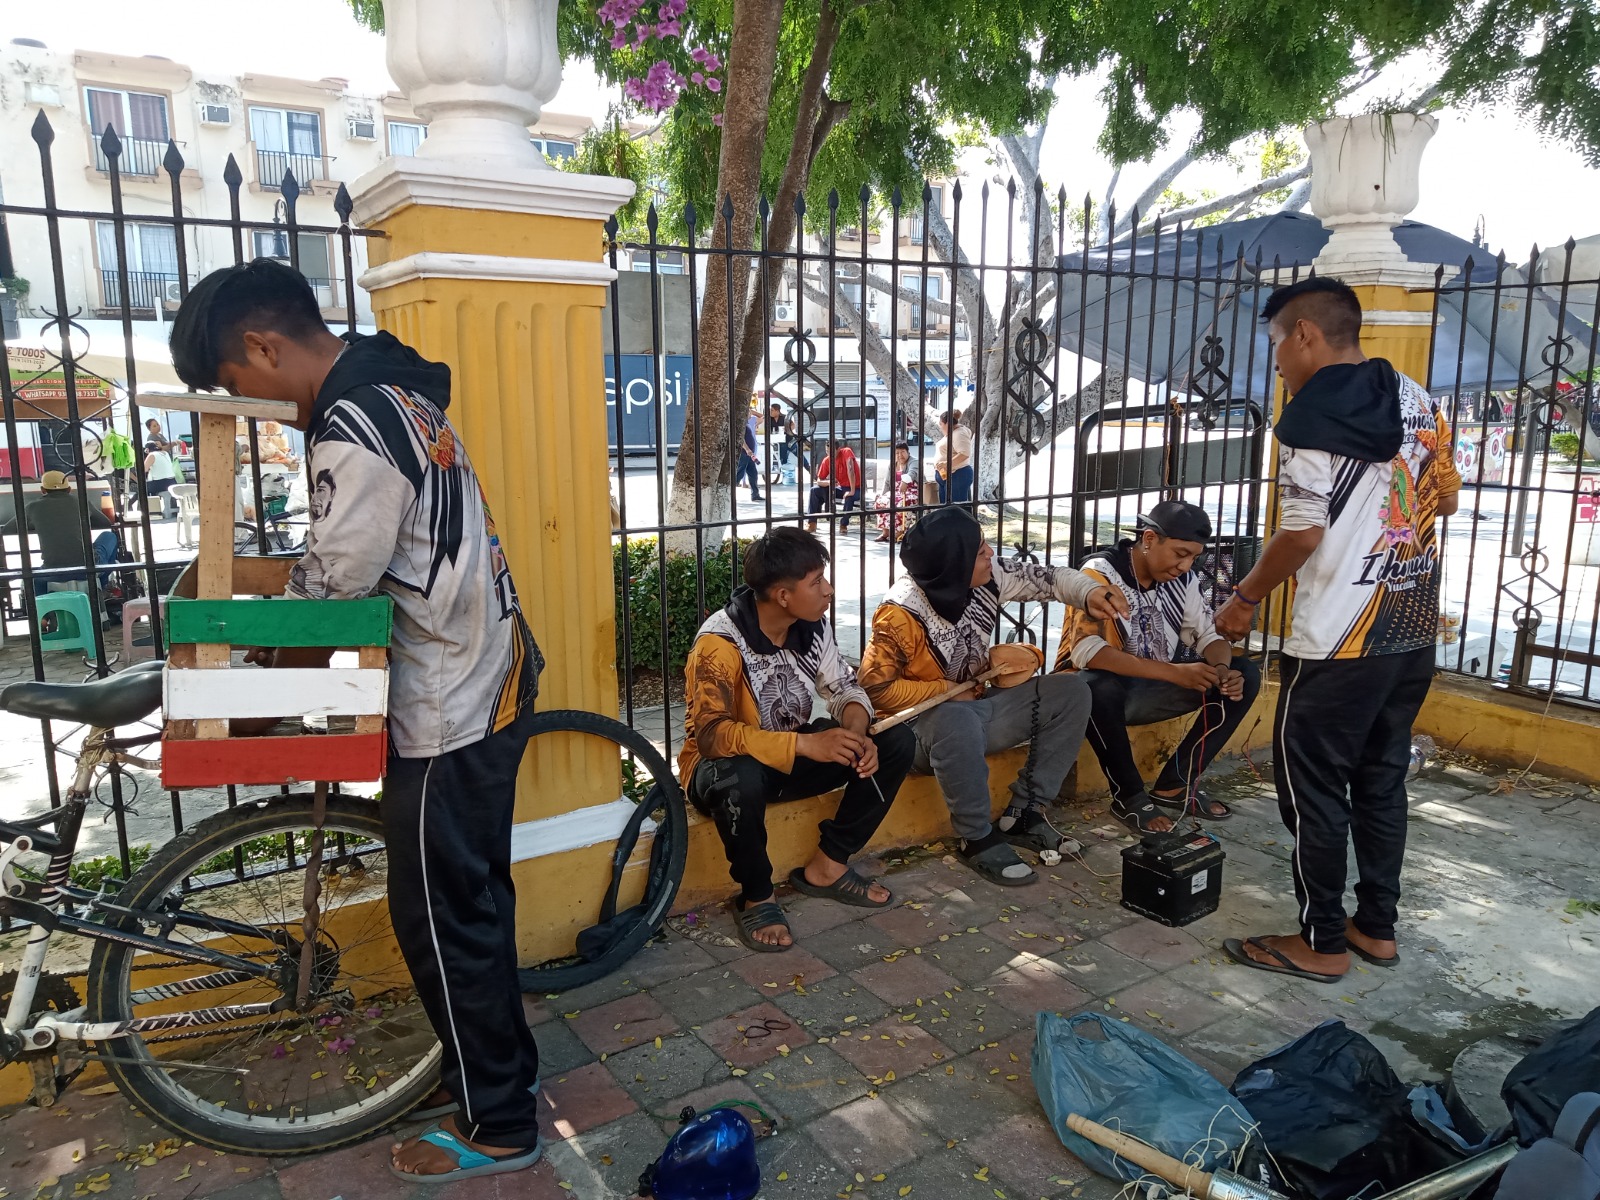 Peregrinos guadalupanos de Yucatán con destino a Villahermosa, Tabasco